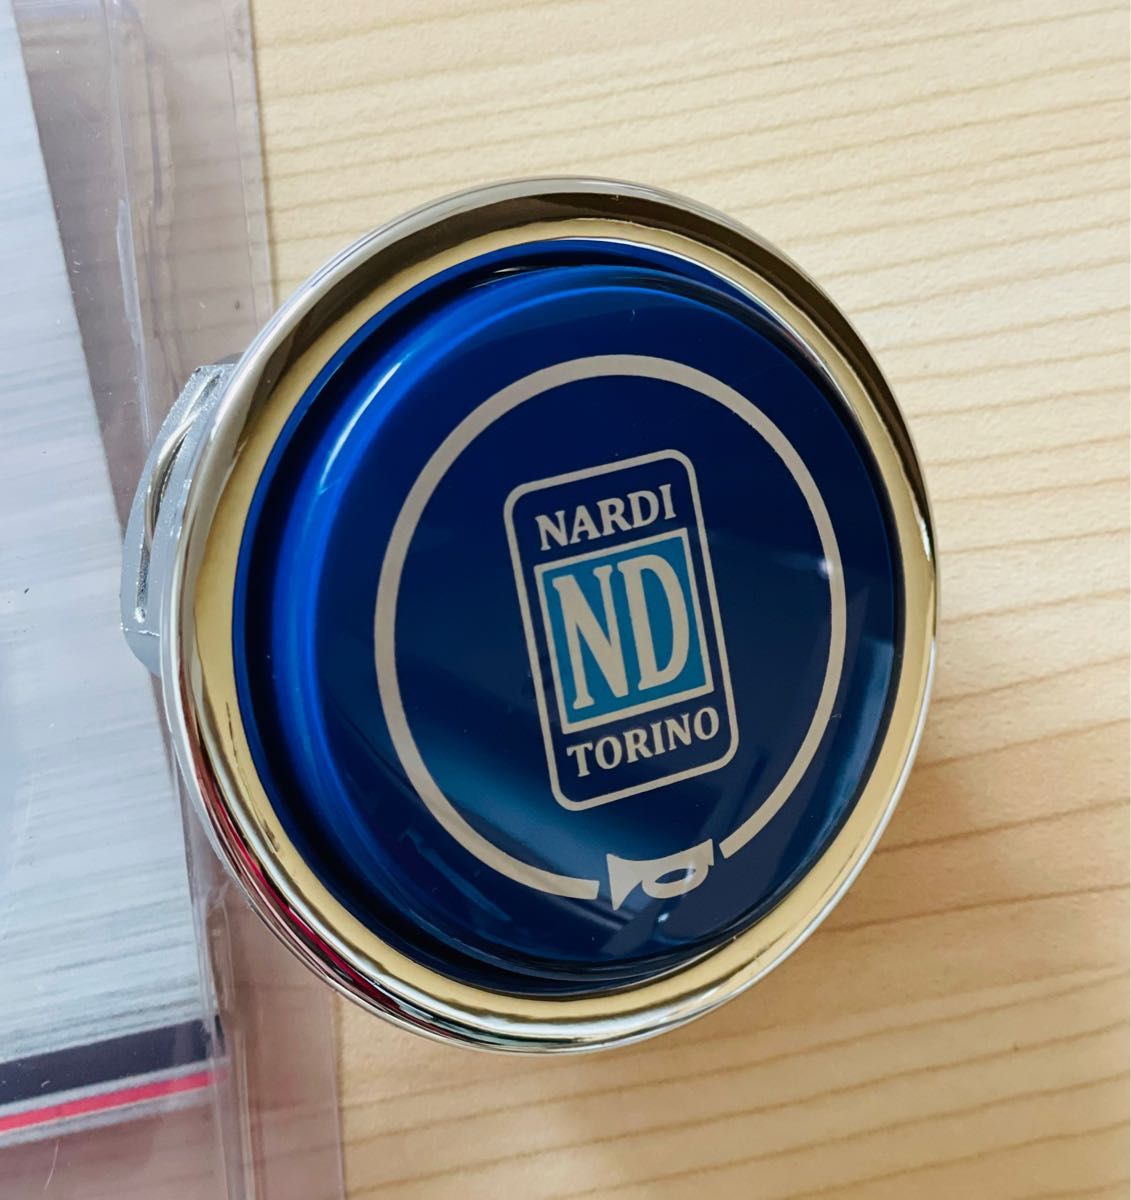 NARDI ナルディ ホーンボタン 未使用品momo サイズ